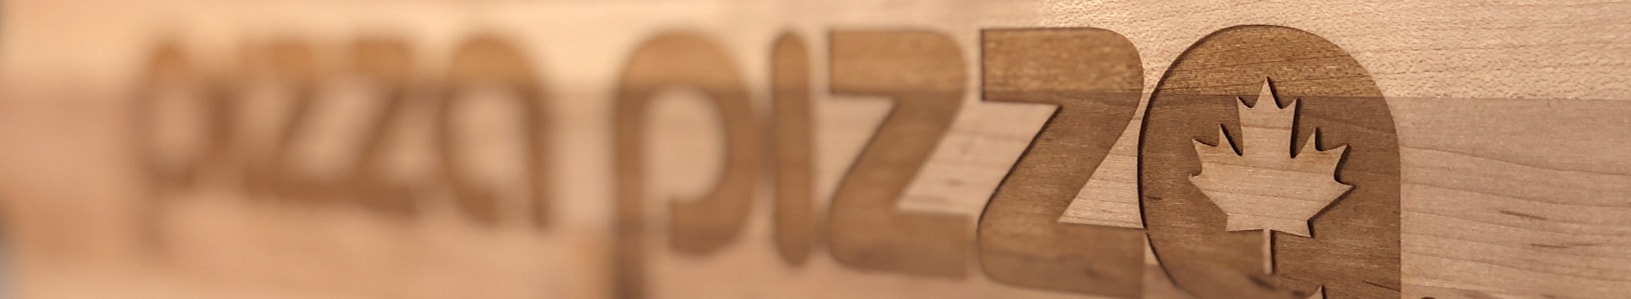 Pizza Pizza Devient Le Principal Commanditaire De L’événement Scotiabank Road Hockey To Conquer Cancer Pour Combattre Le Cancer